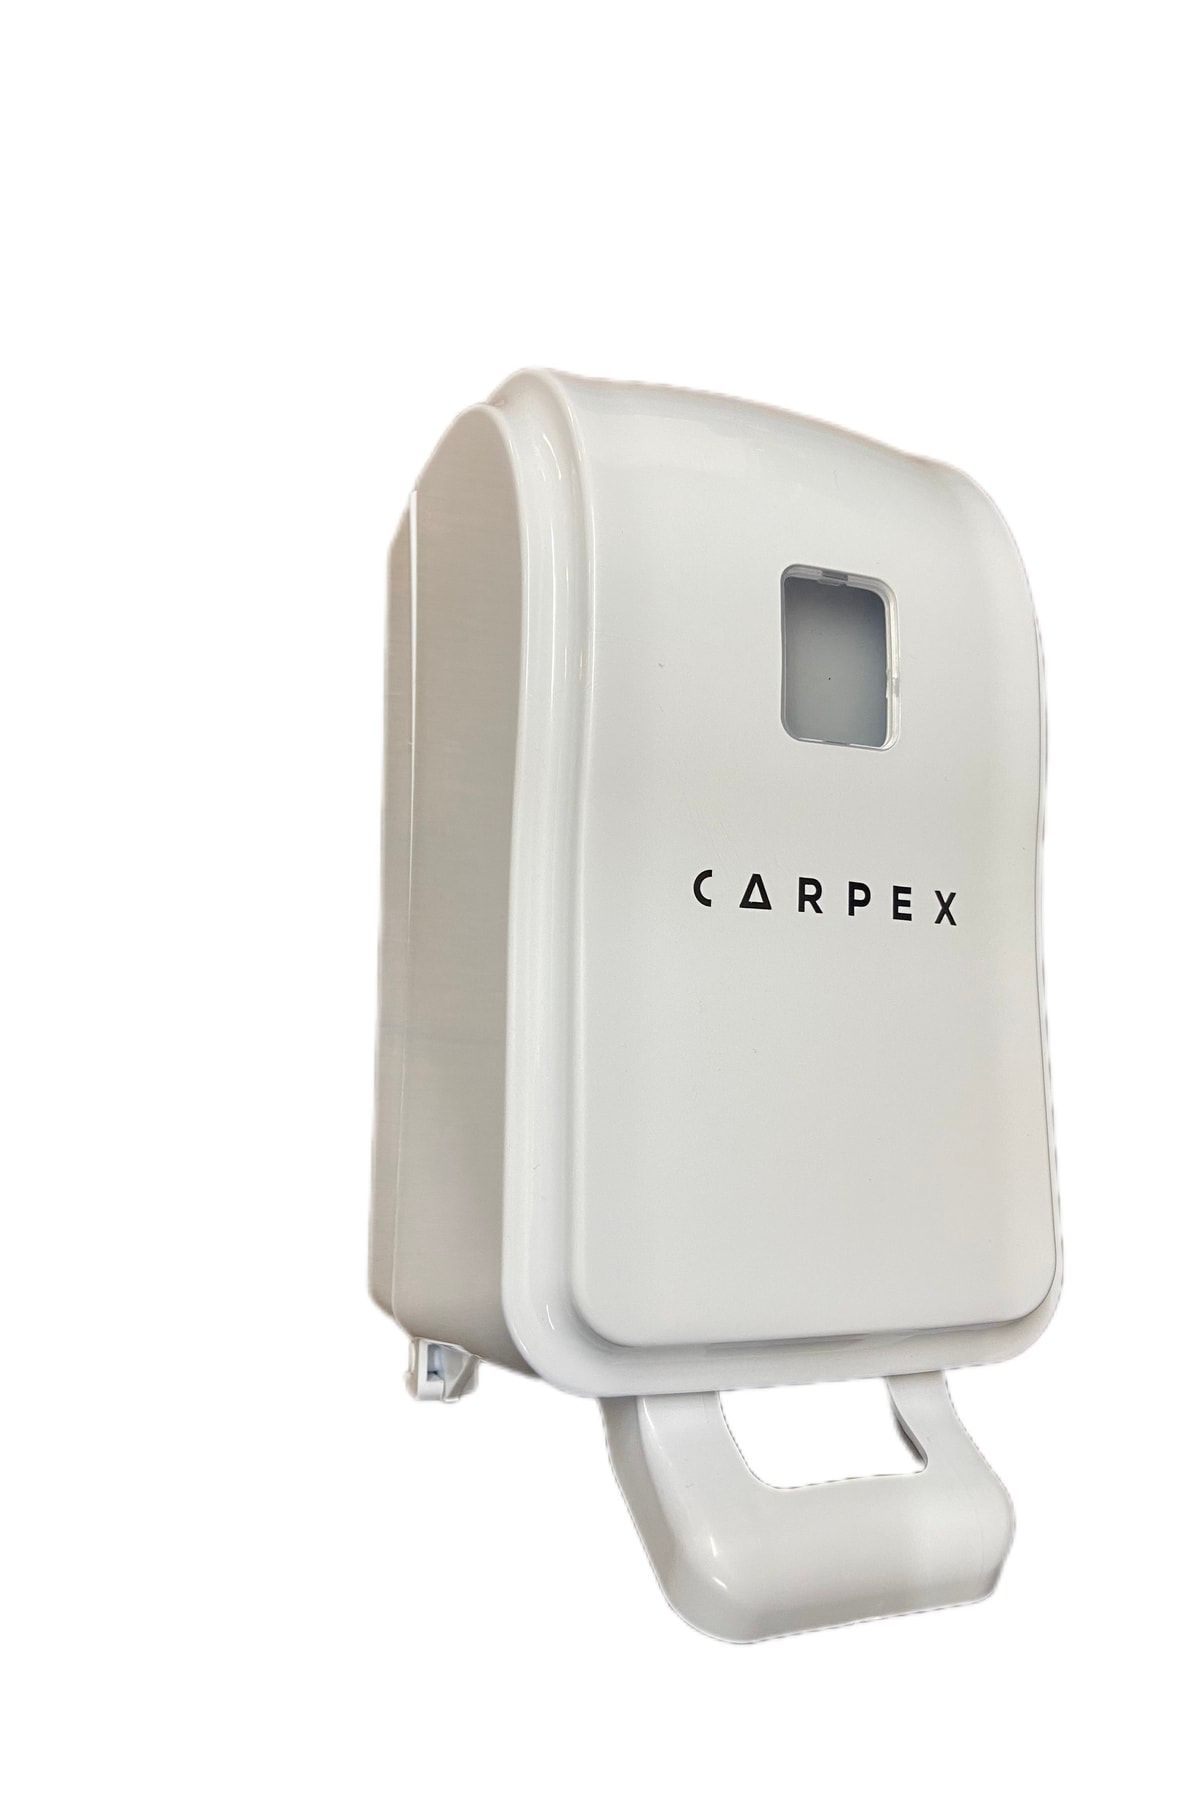 Carpex Optima Mini Manuel Hazneli Köpük Sabun Aparatı 500 Ml Beyaz